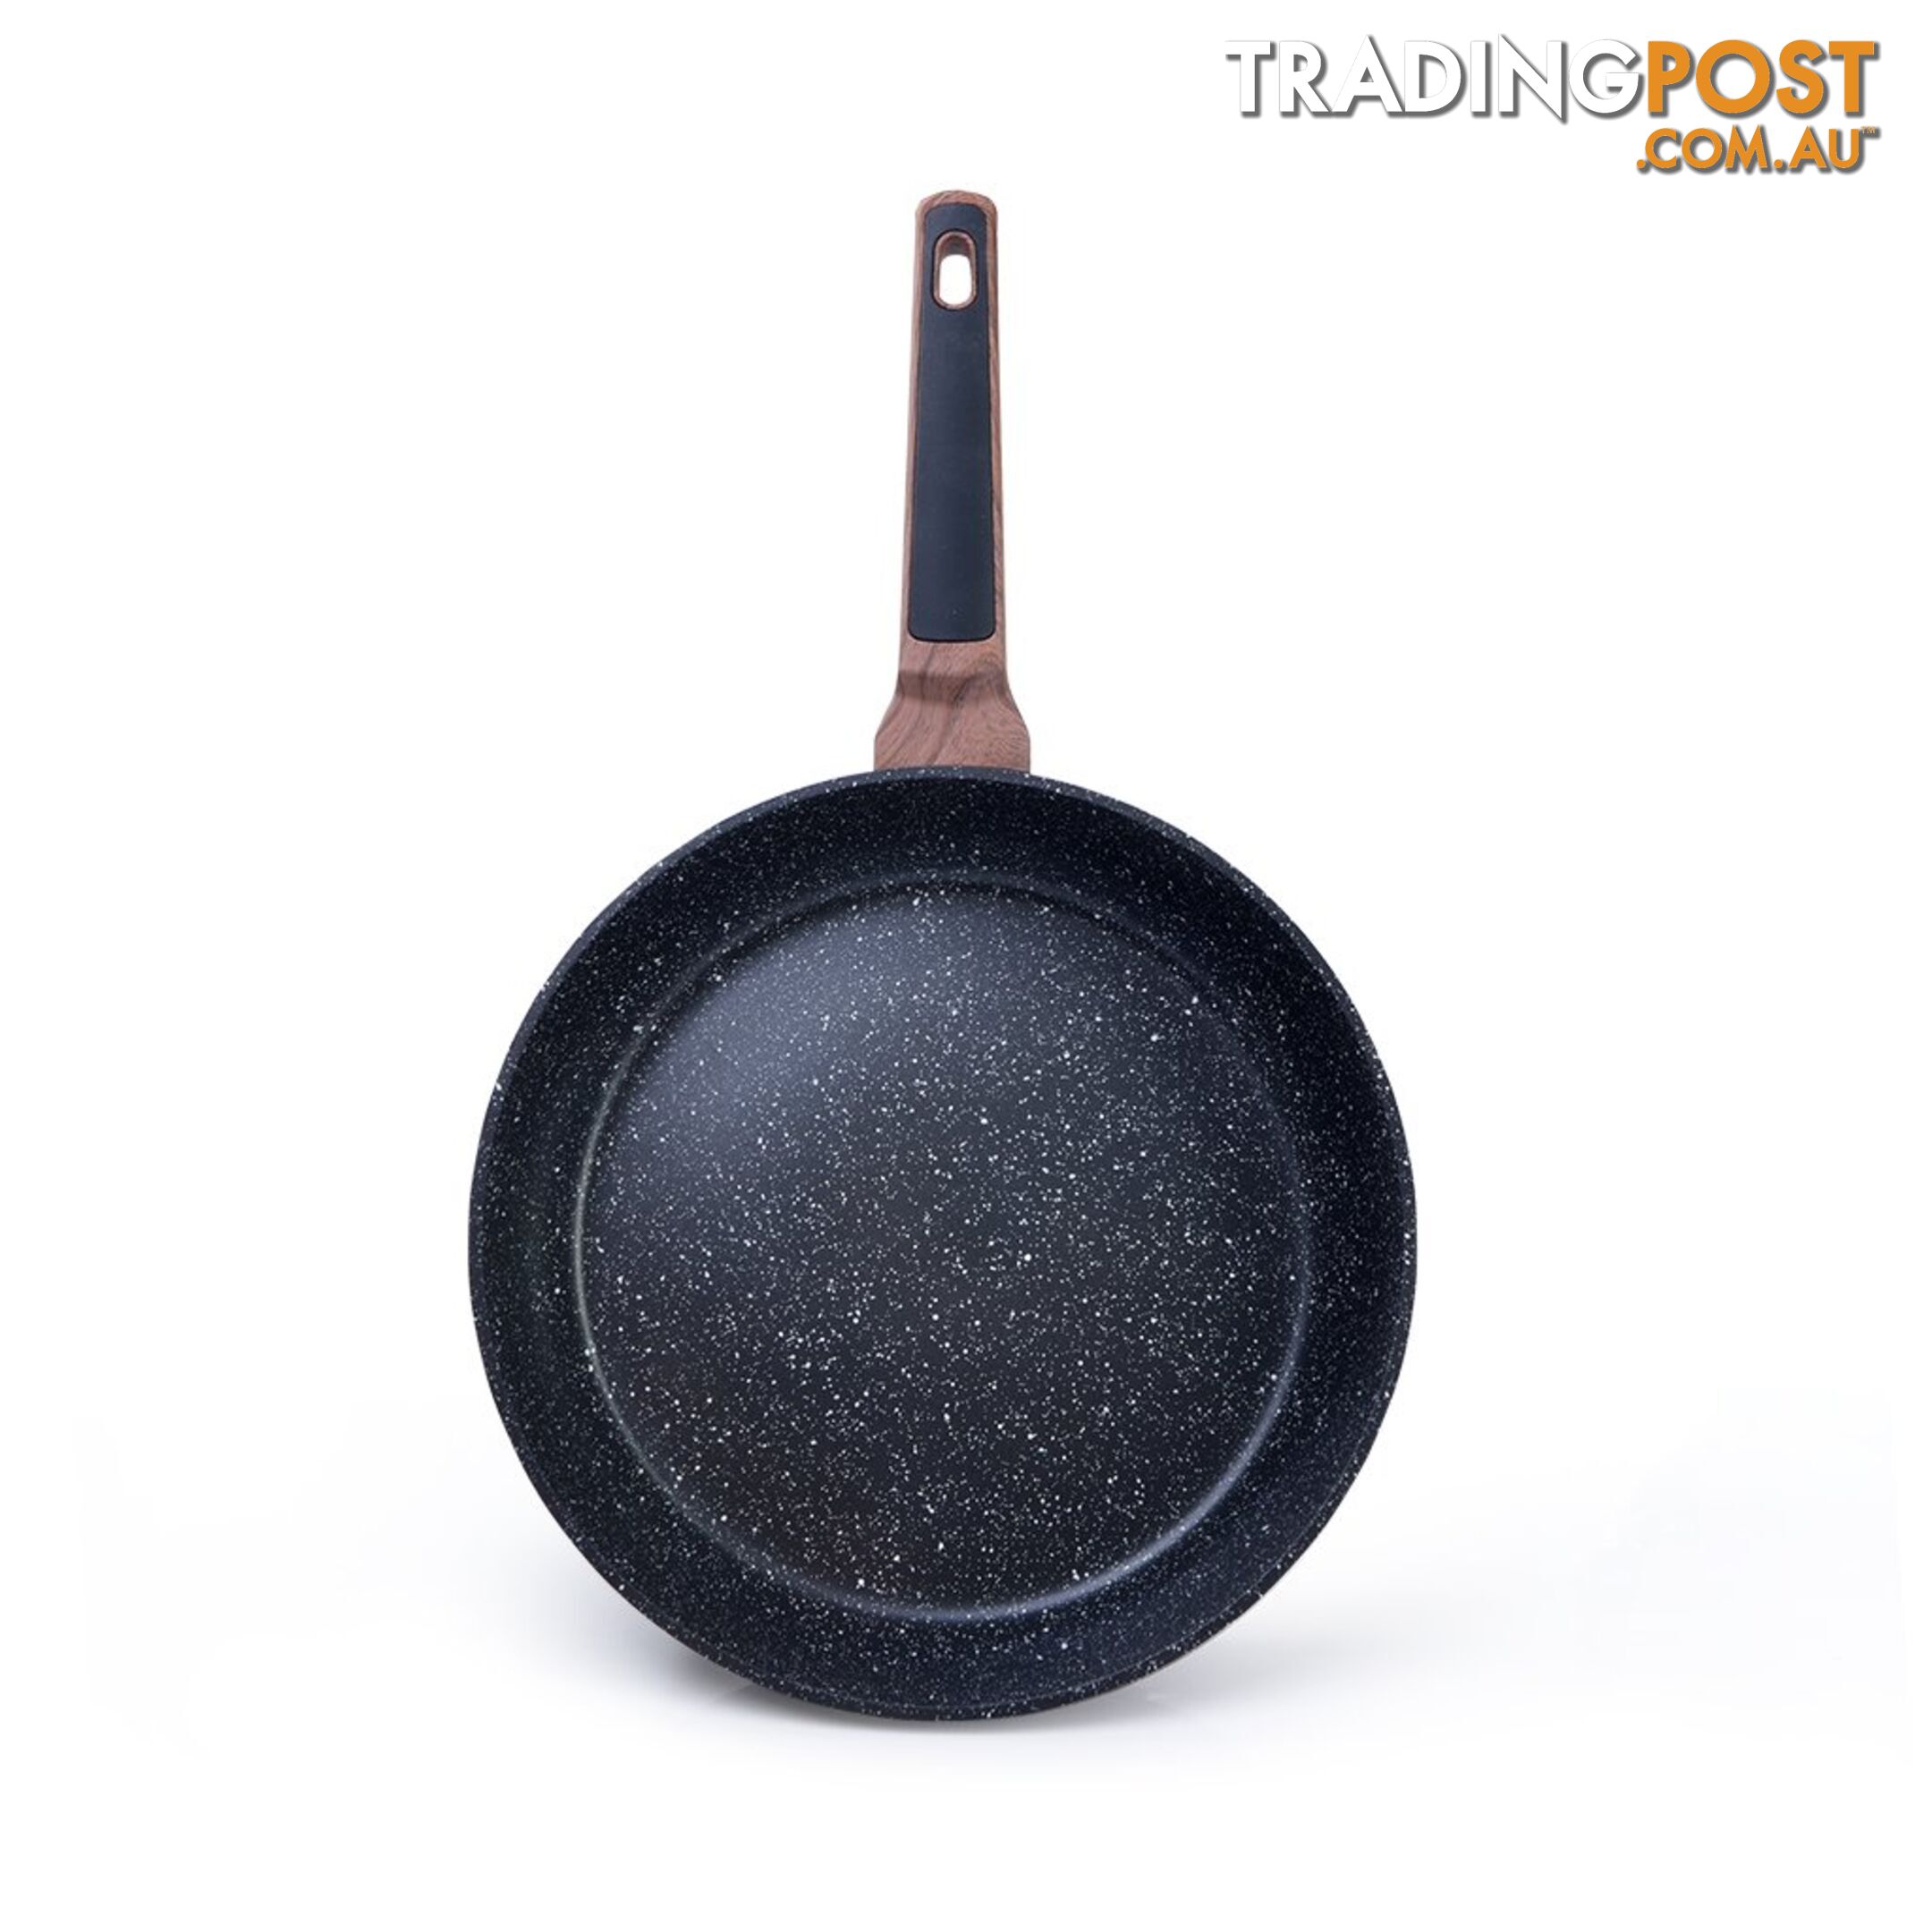 FISSMAN Frying pan DIAMOND - 26x5.8 cm - 14307